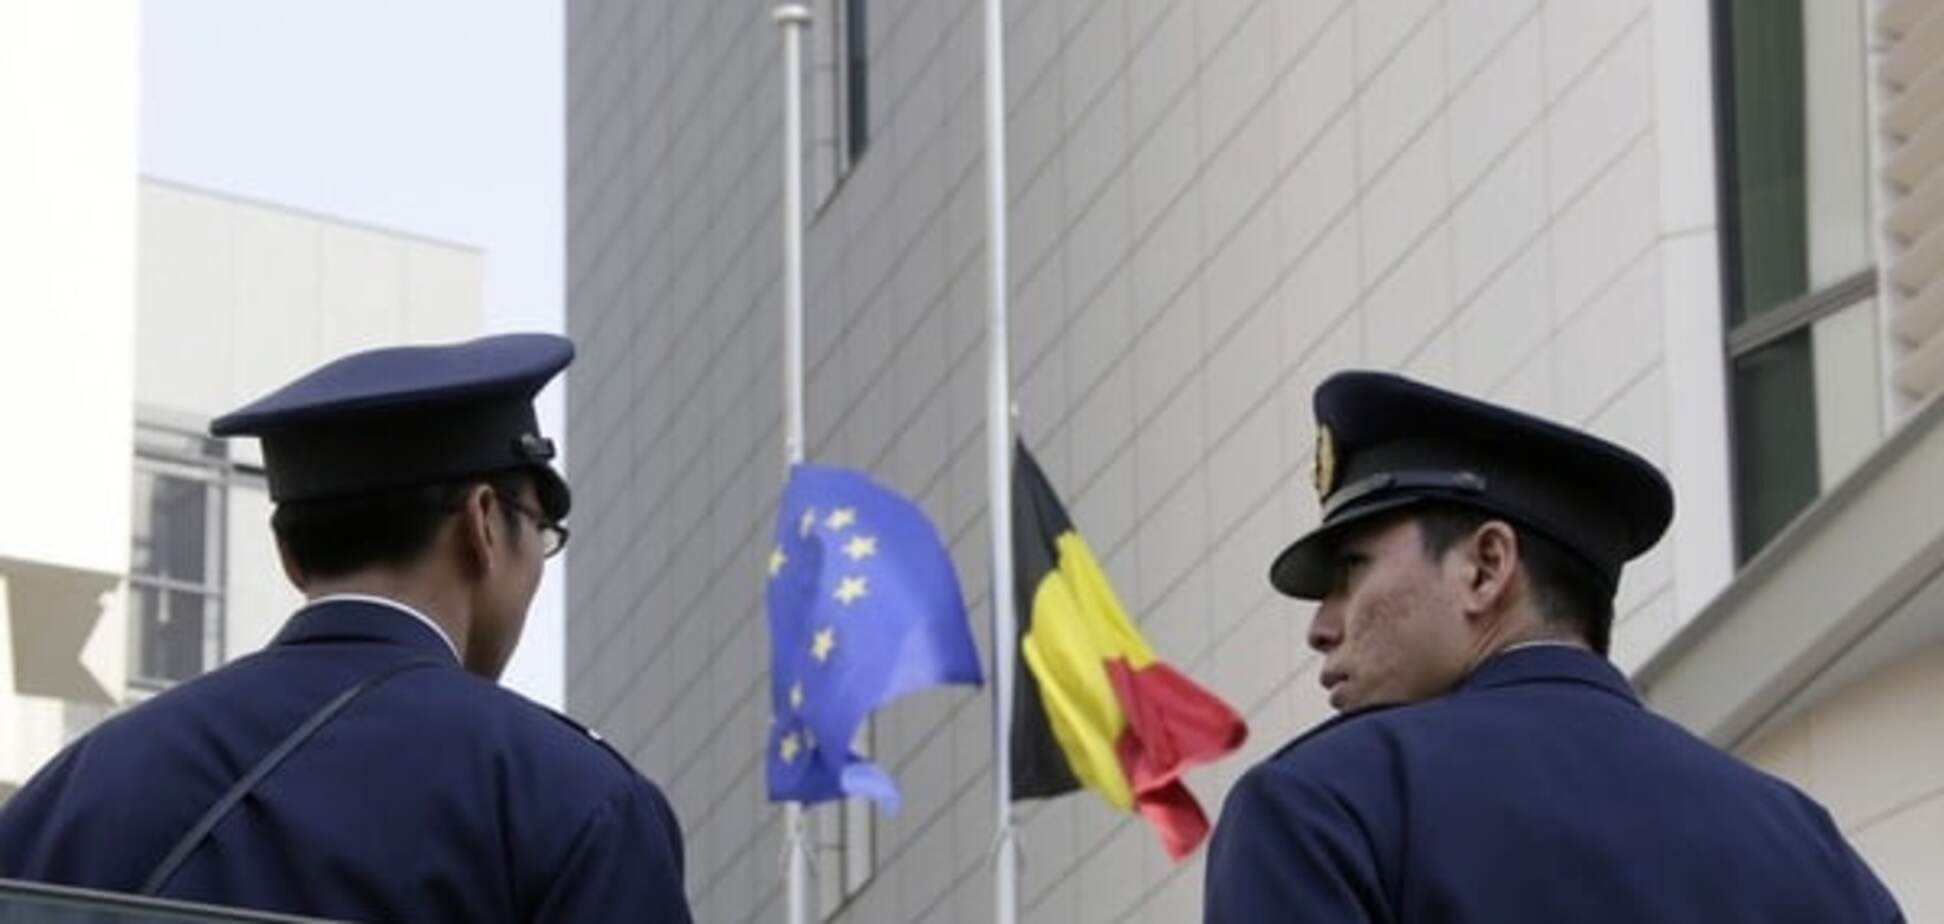 Теракты в Брюсселе - катастрофический провал спецслужб Евросоюза - экс-глава ЦРУ 